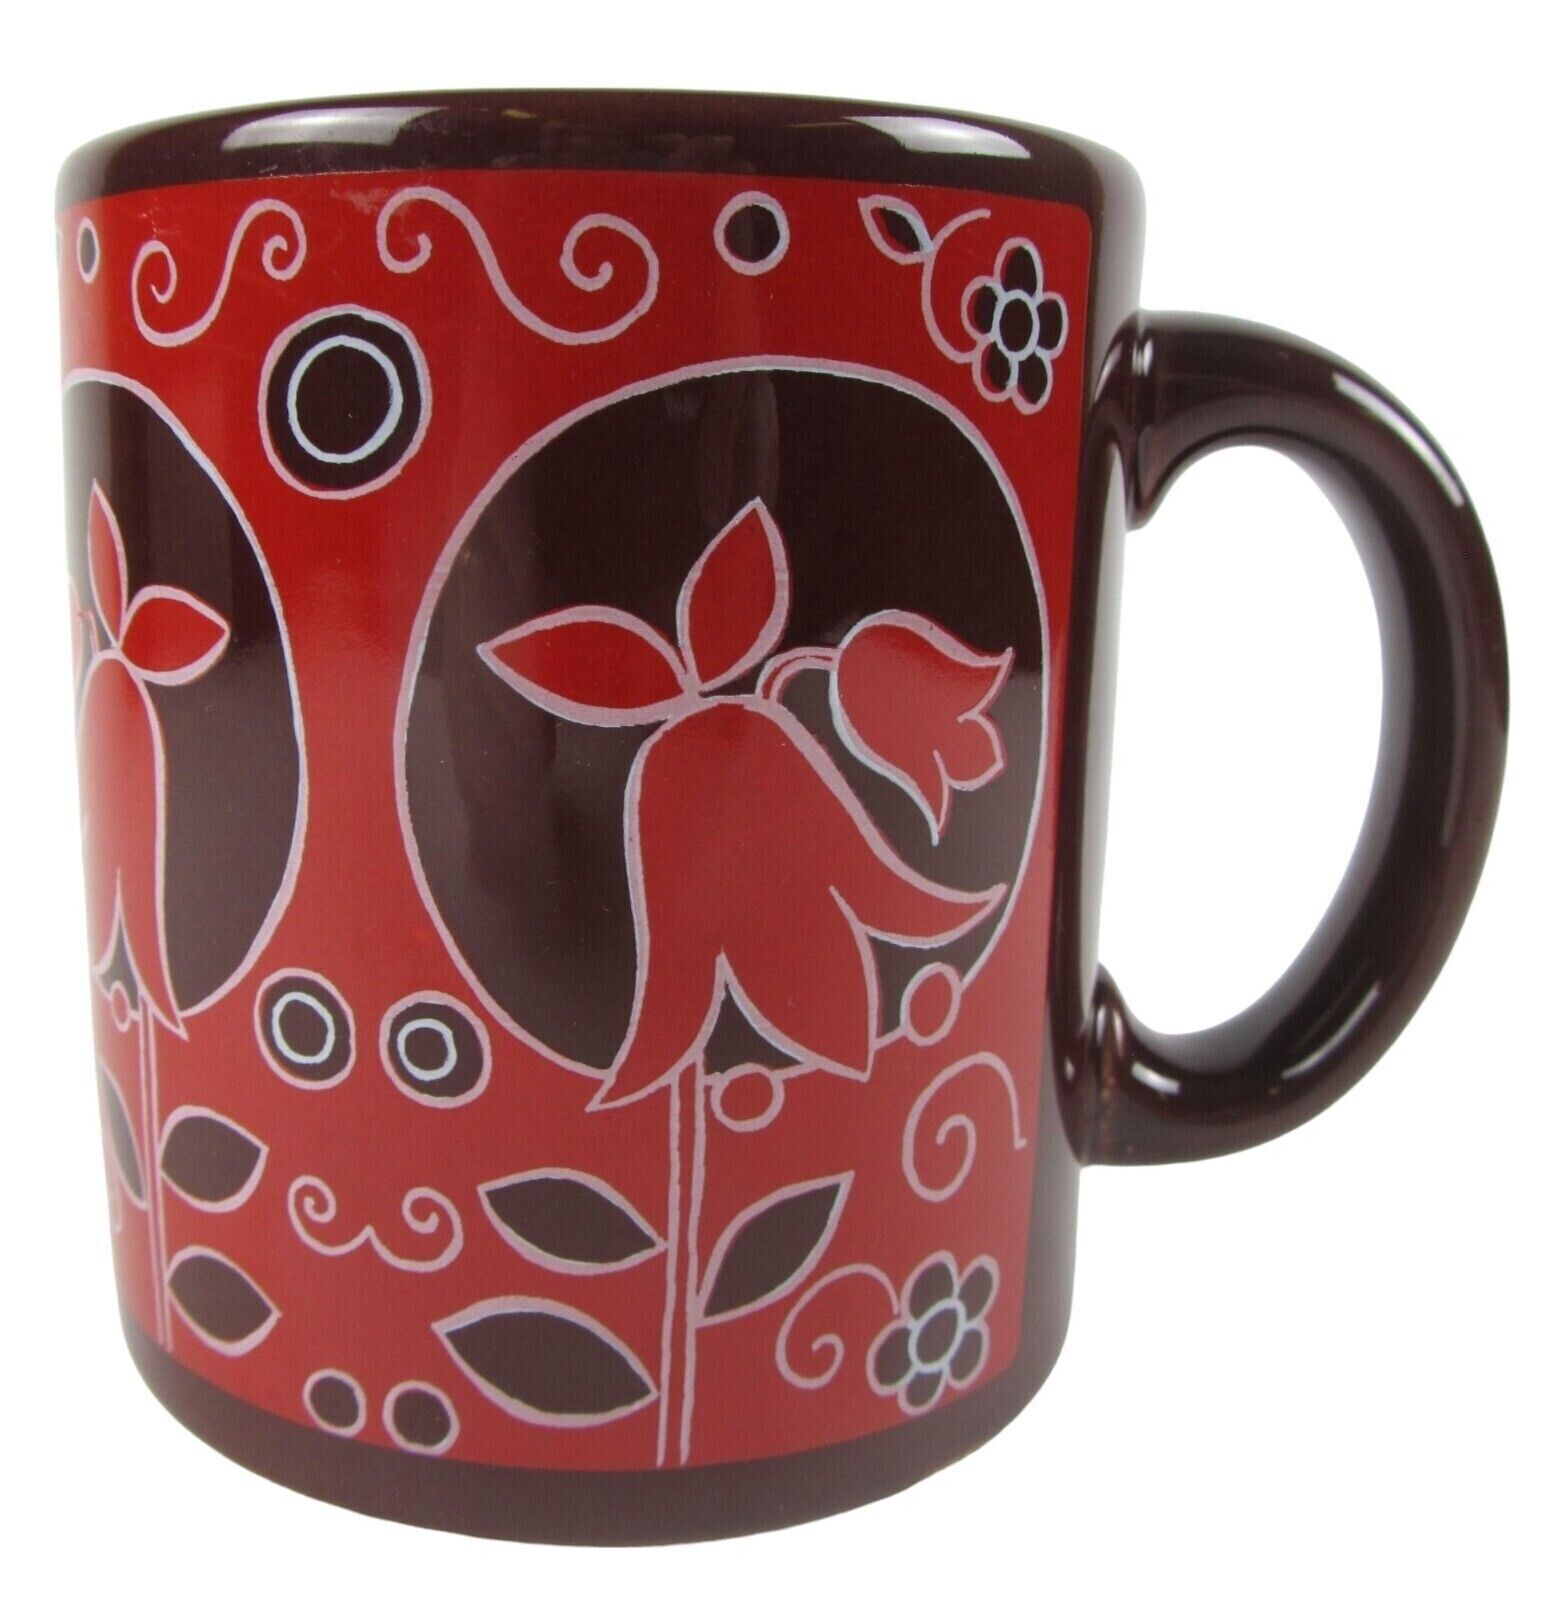 Waechtersbach Red Brown Flowers Coffee Tea Mug Cup 10 oz Vintage W Germany